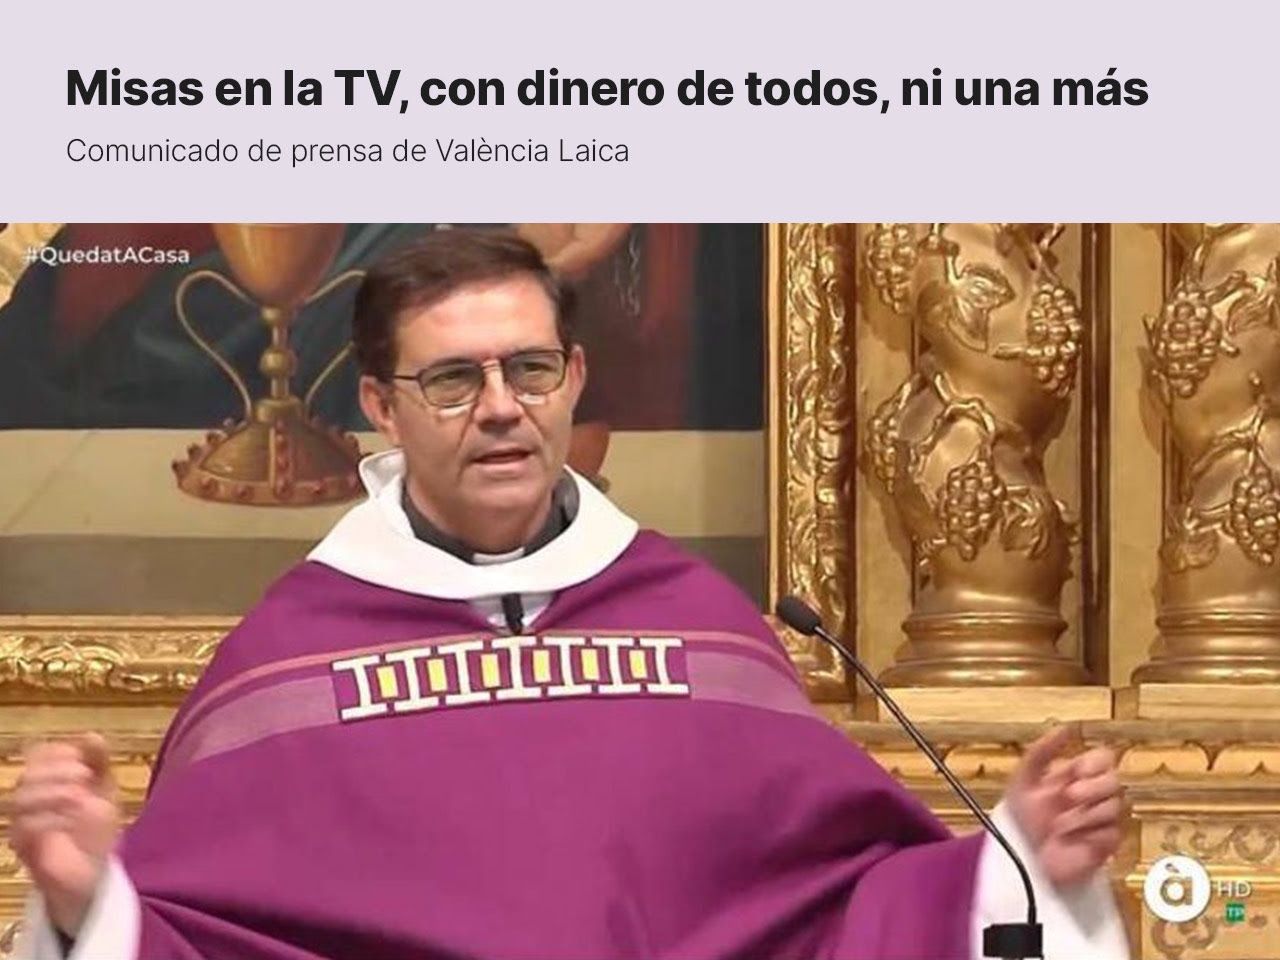 València Laica lamenta la retransmisión de misas en la TV pública